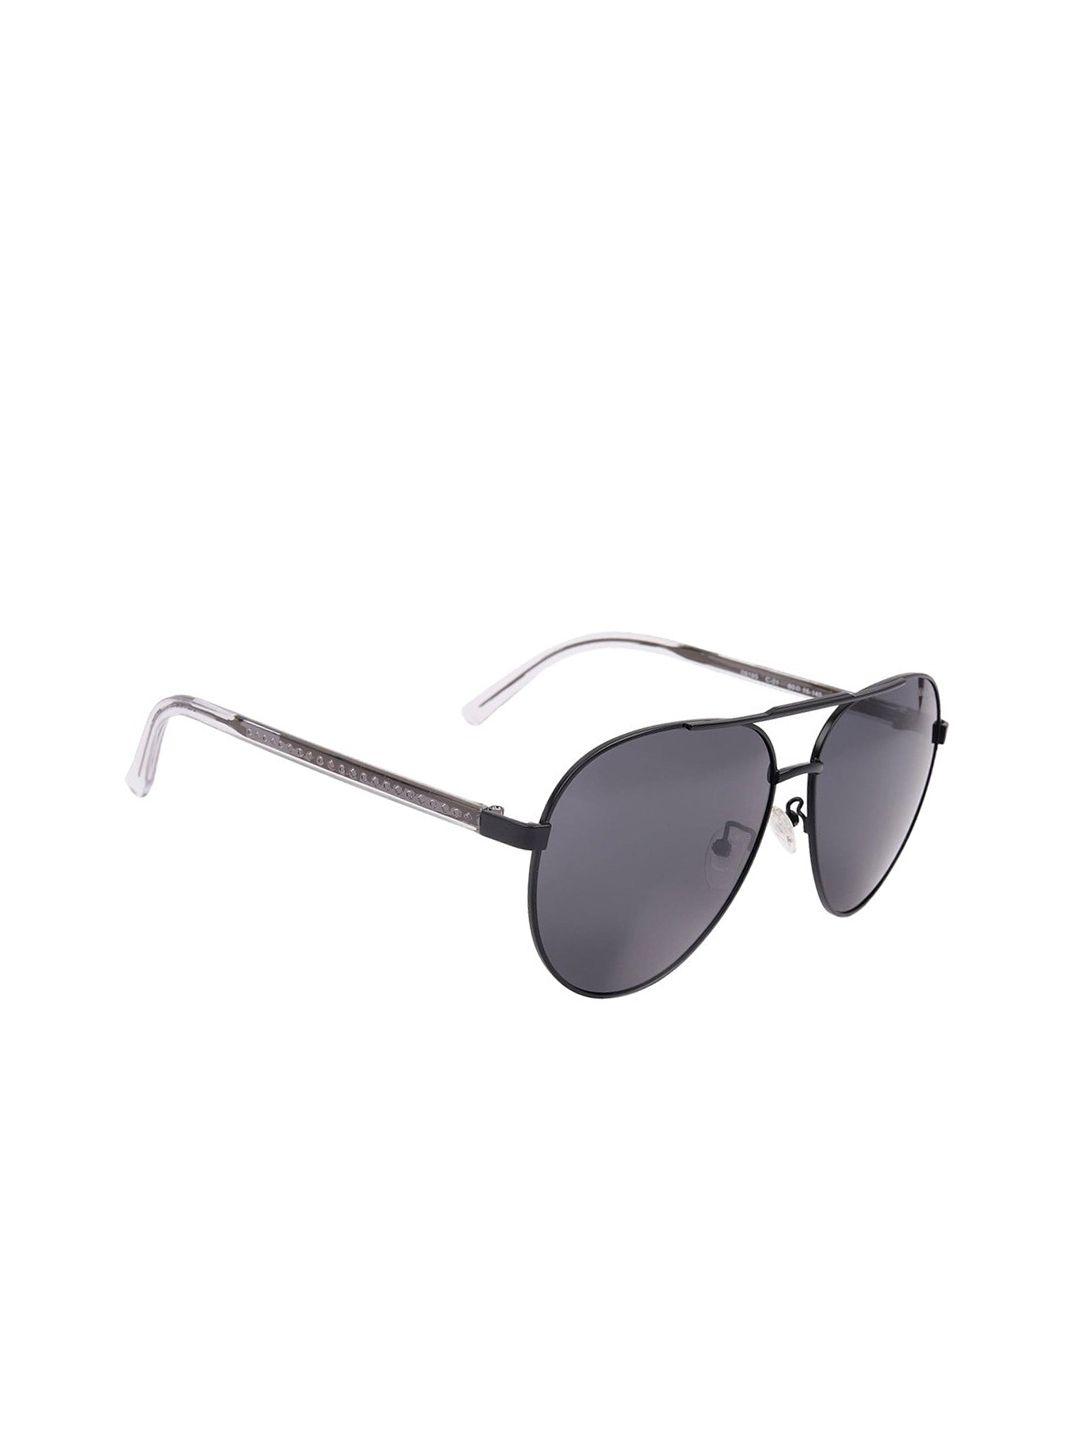 marc louis unisex grey aviator sunglasses 0919s c01